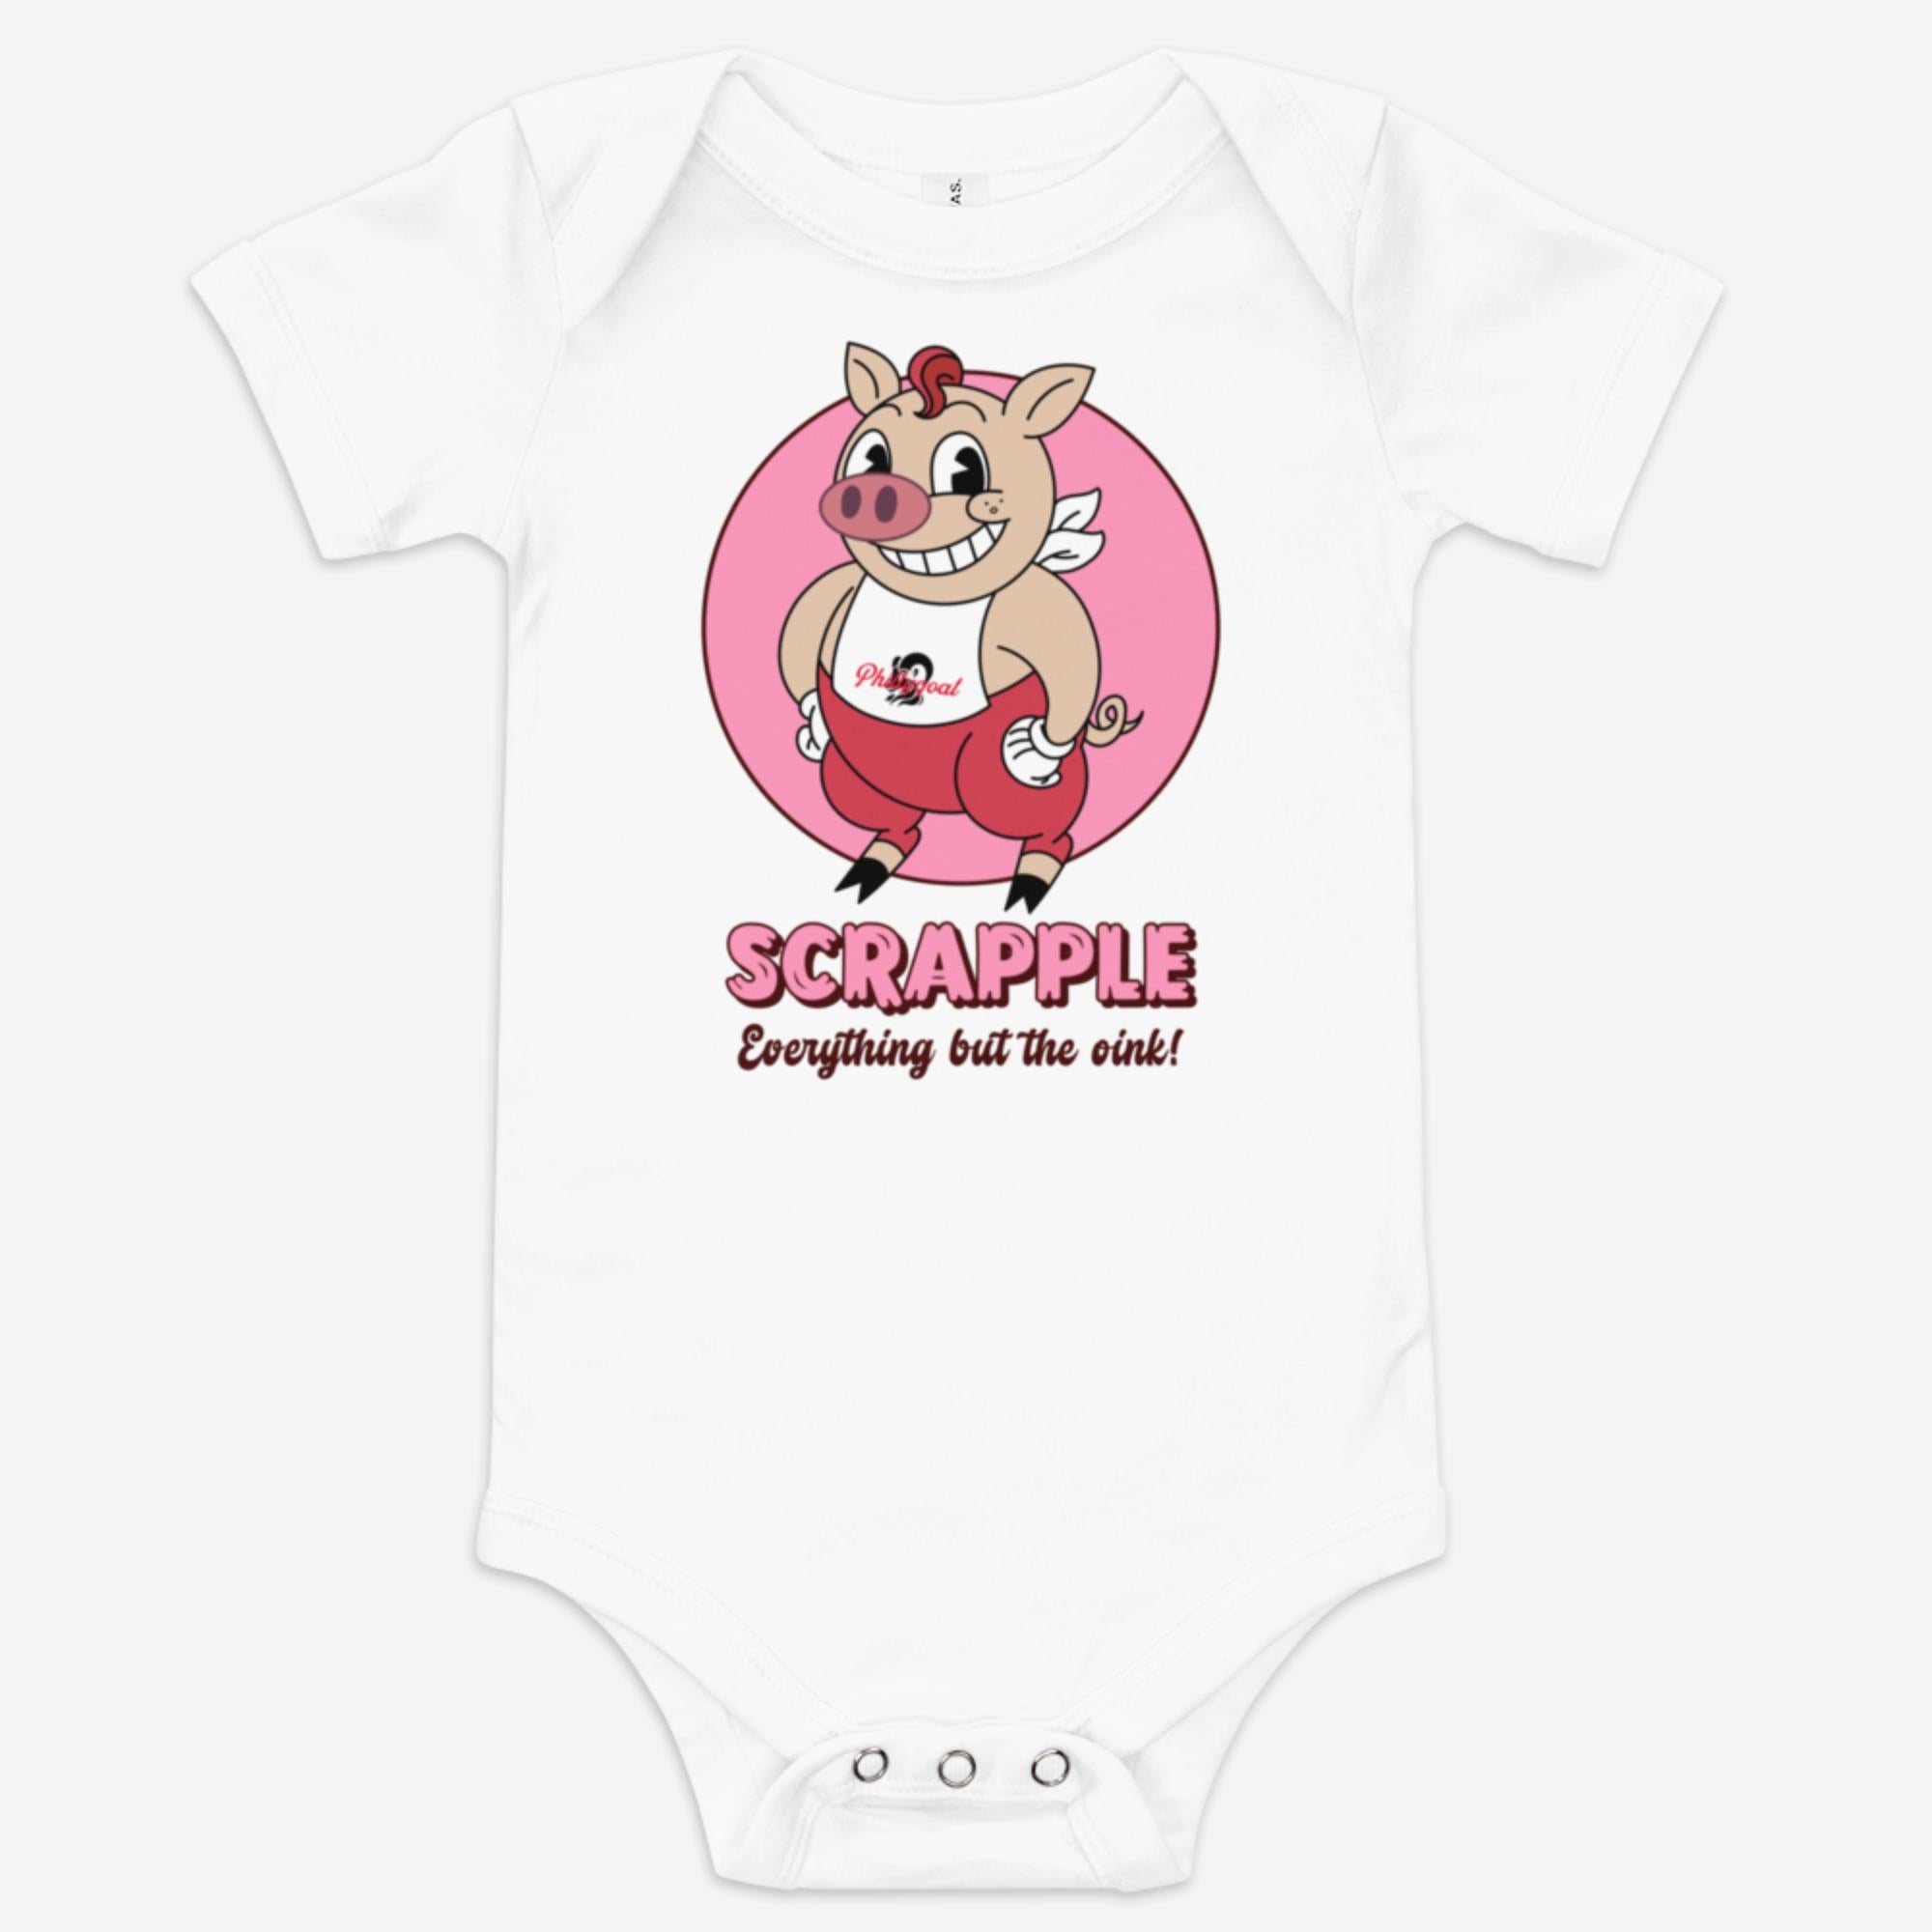 "Scrapple" Baby Onesie